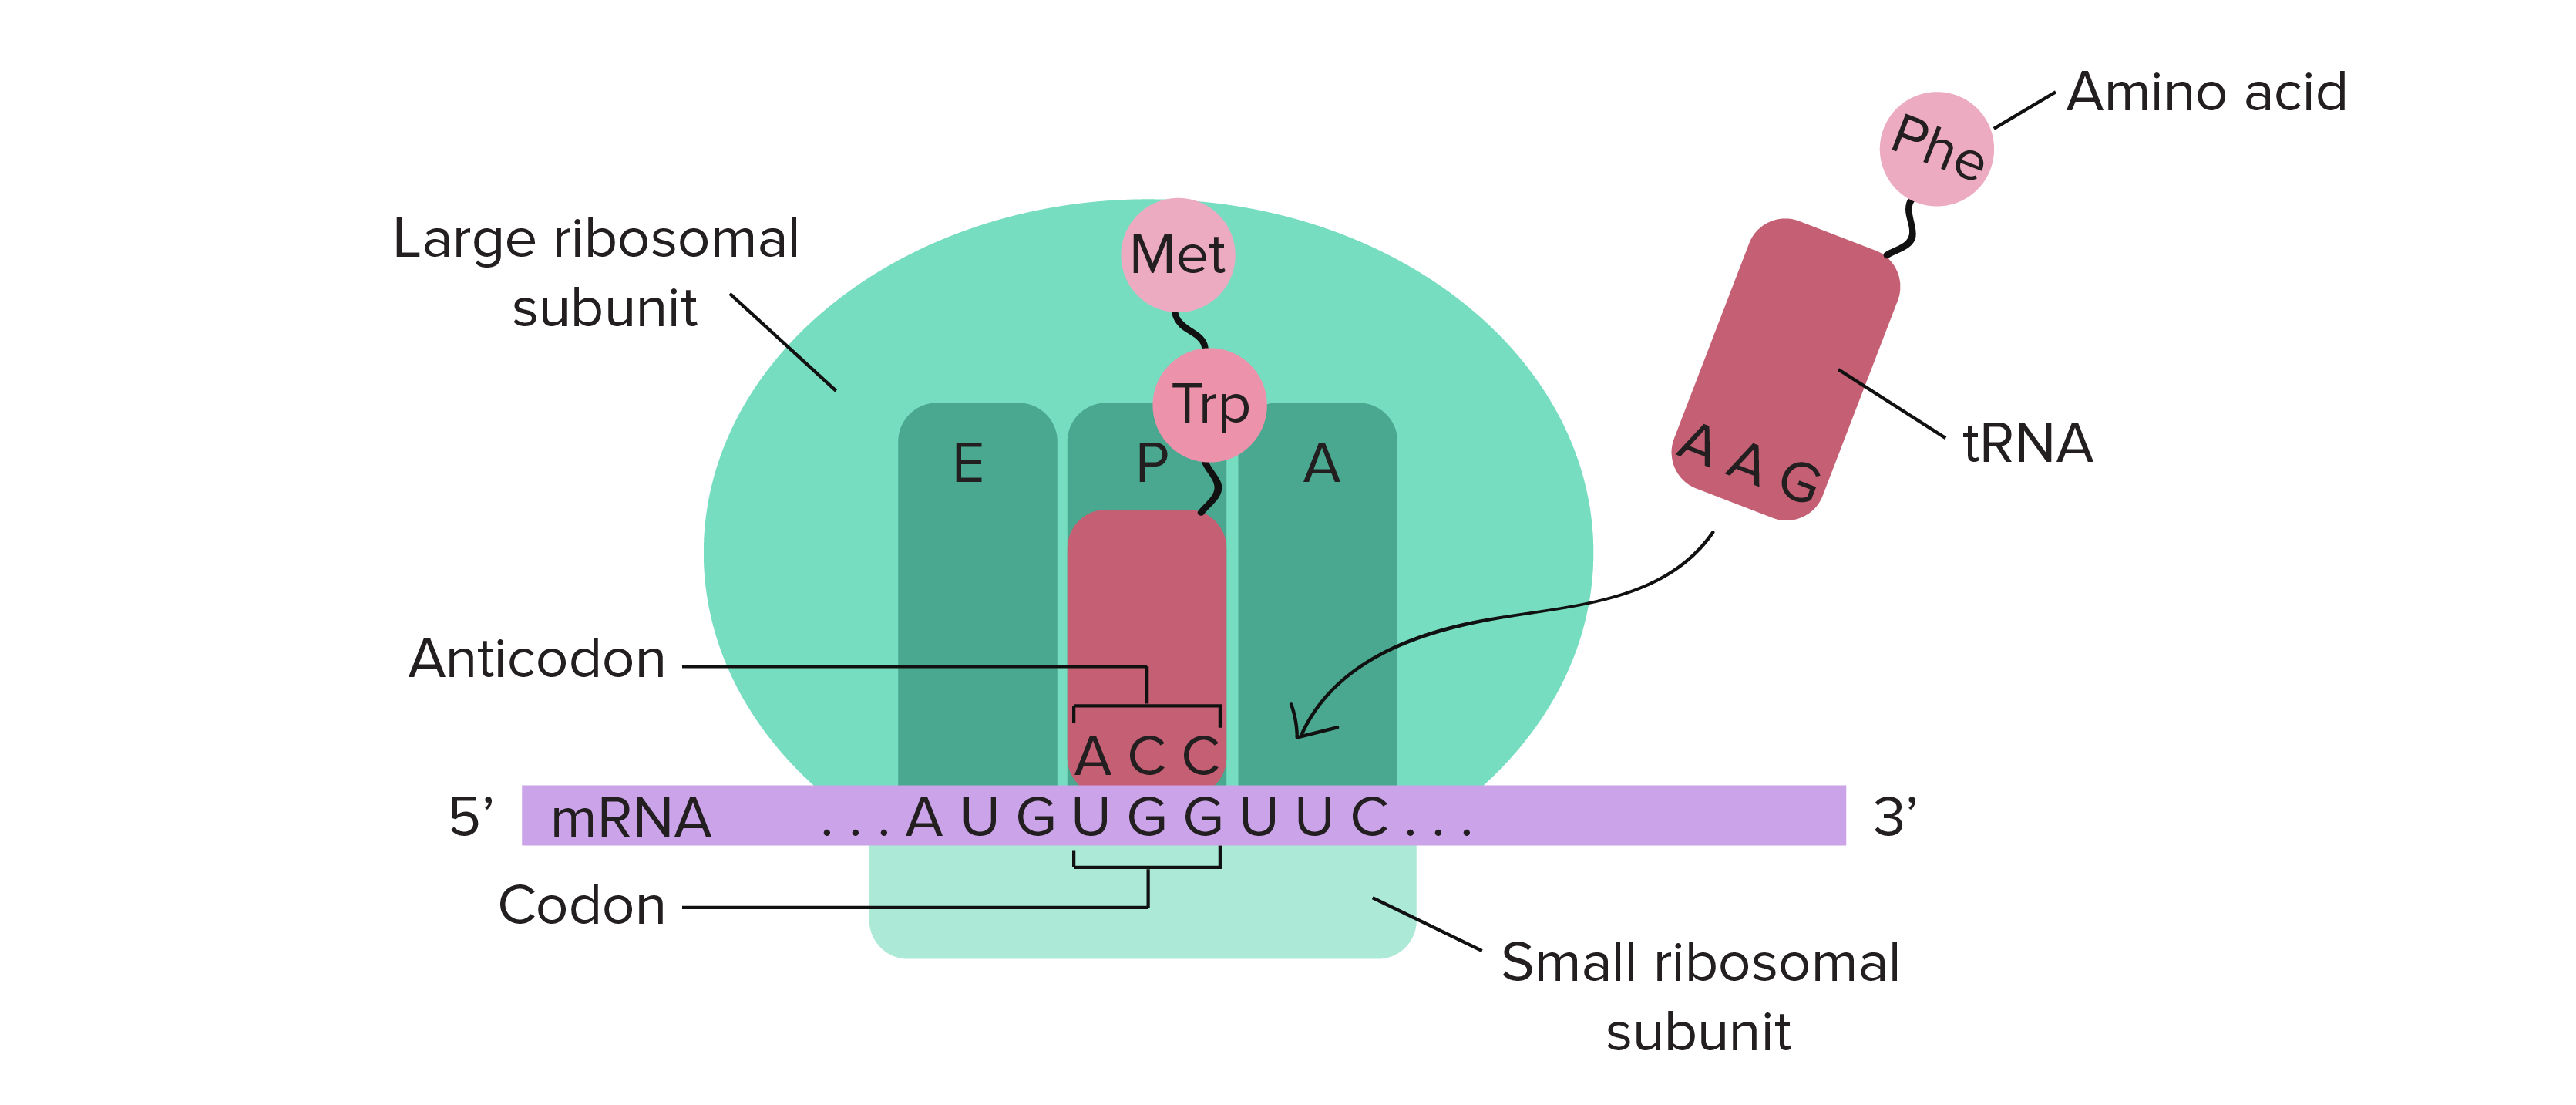 O ribossomo provê um lugar no qual um RNAm pode interagir com RNAt que transportam aminoácidos. Há três compartimentos no ribossomo onde os RNAt se ligam: os sítios A, P e E. O sítio A recebe um RNAt de entrada ligado a um aminoácido. O sítio P detém um RNAt que carrega um polipeptídeo crescente (o primeiro aminoácido adicionado é a metionina (Met)). O sítio E é o local para onde um RNAt vai após estar vazio, o que significa que transferiu seu polipeptídeo para outro RNAt (que agora ocupa o sítio P). No diagrama, o RNAt vazio já deixou o sítio E, portanto não é representado.